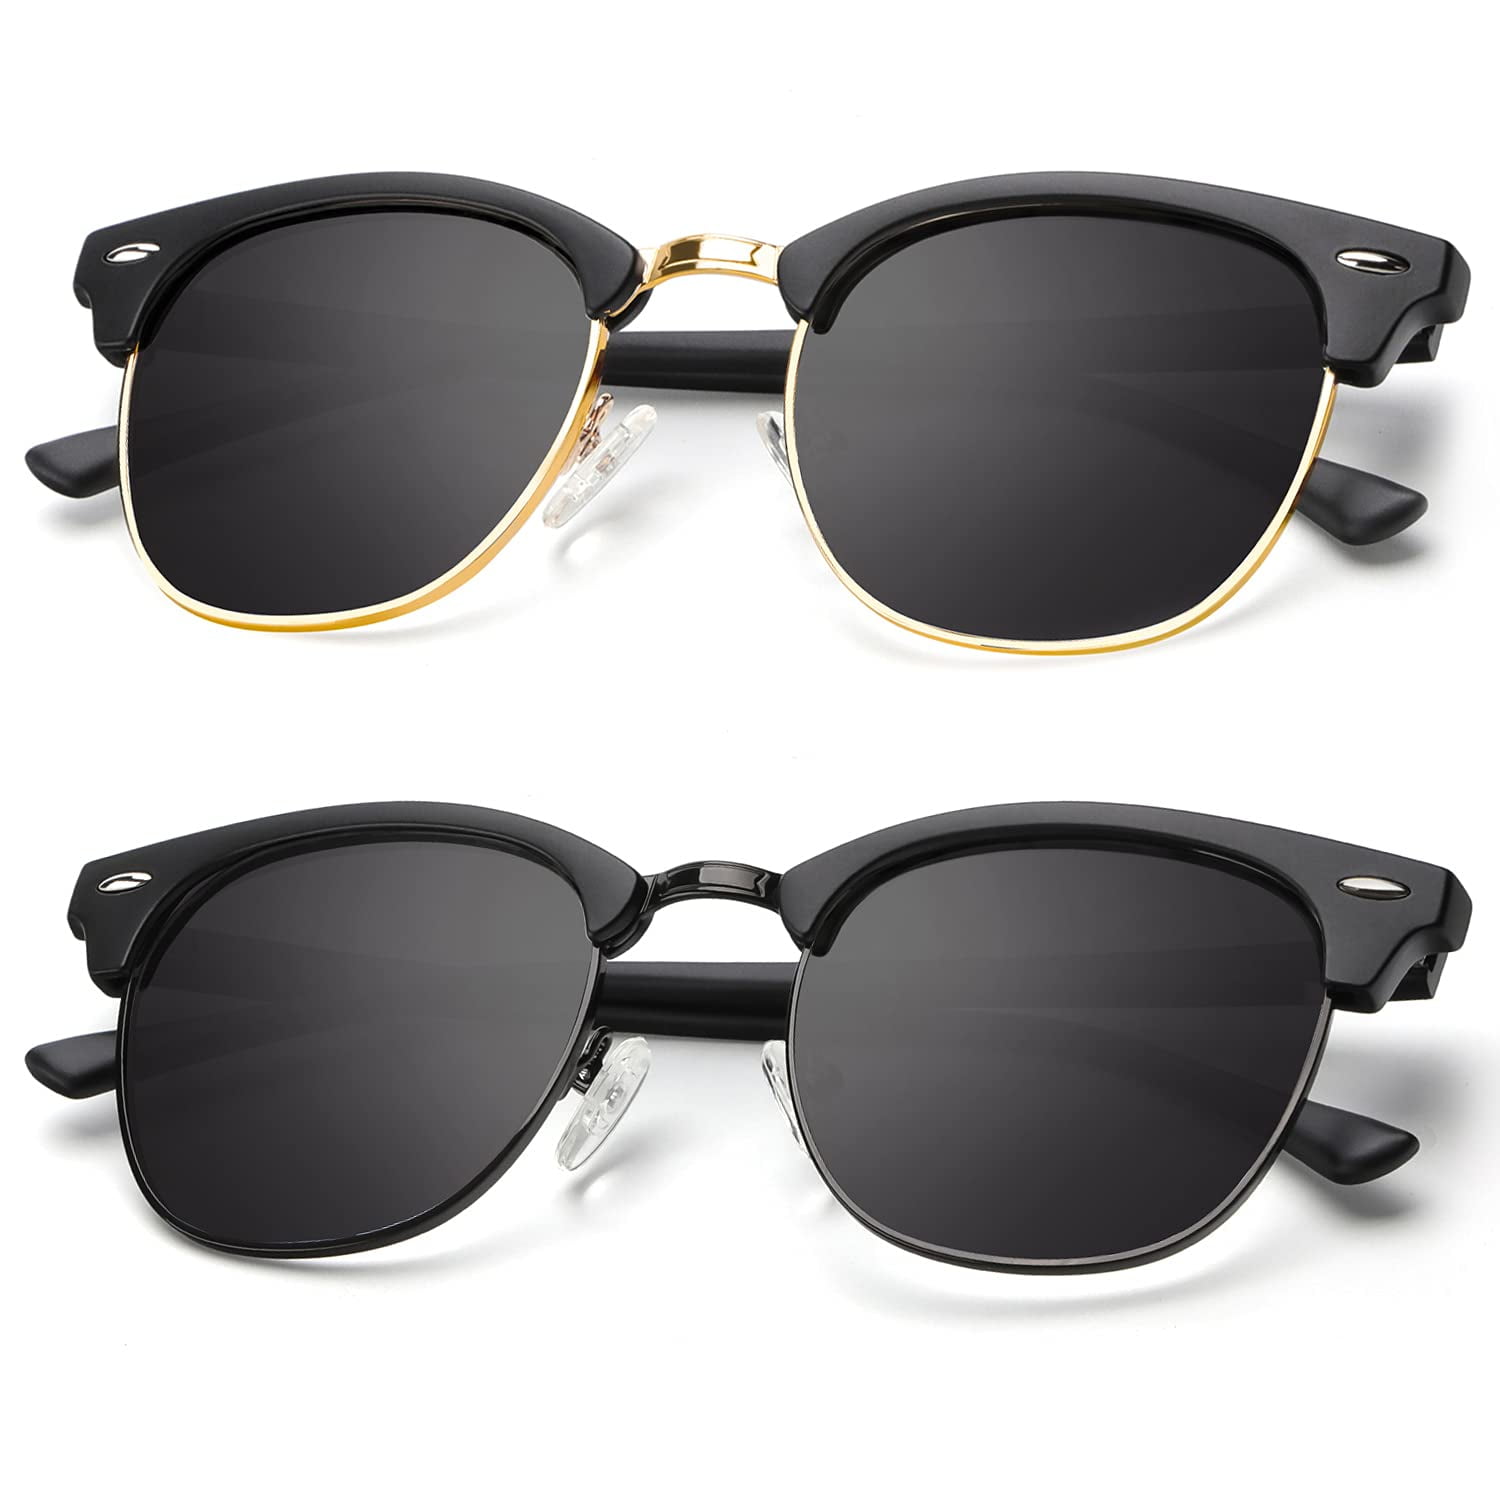 2 PAIR MEN Women Sunglasses Style Black Frame 100% UV Dark MIRROR Lens 